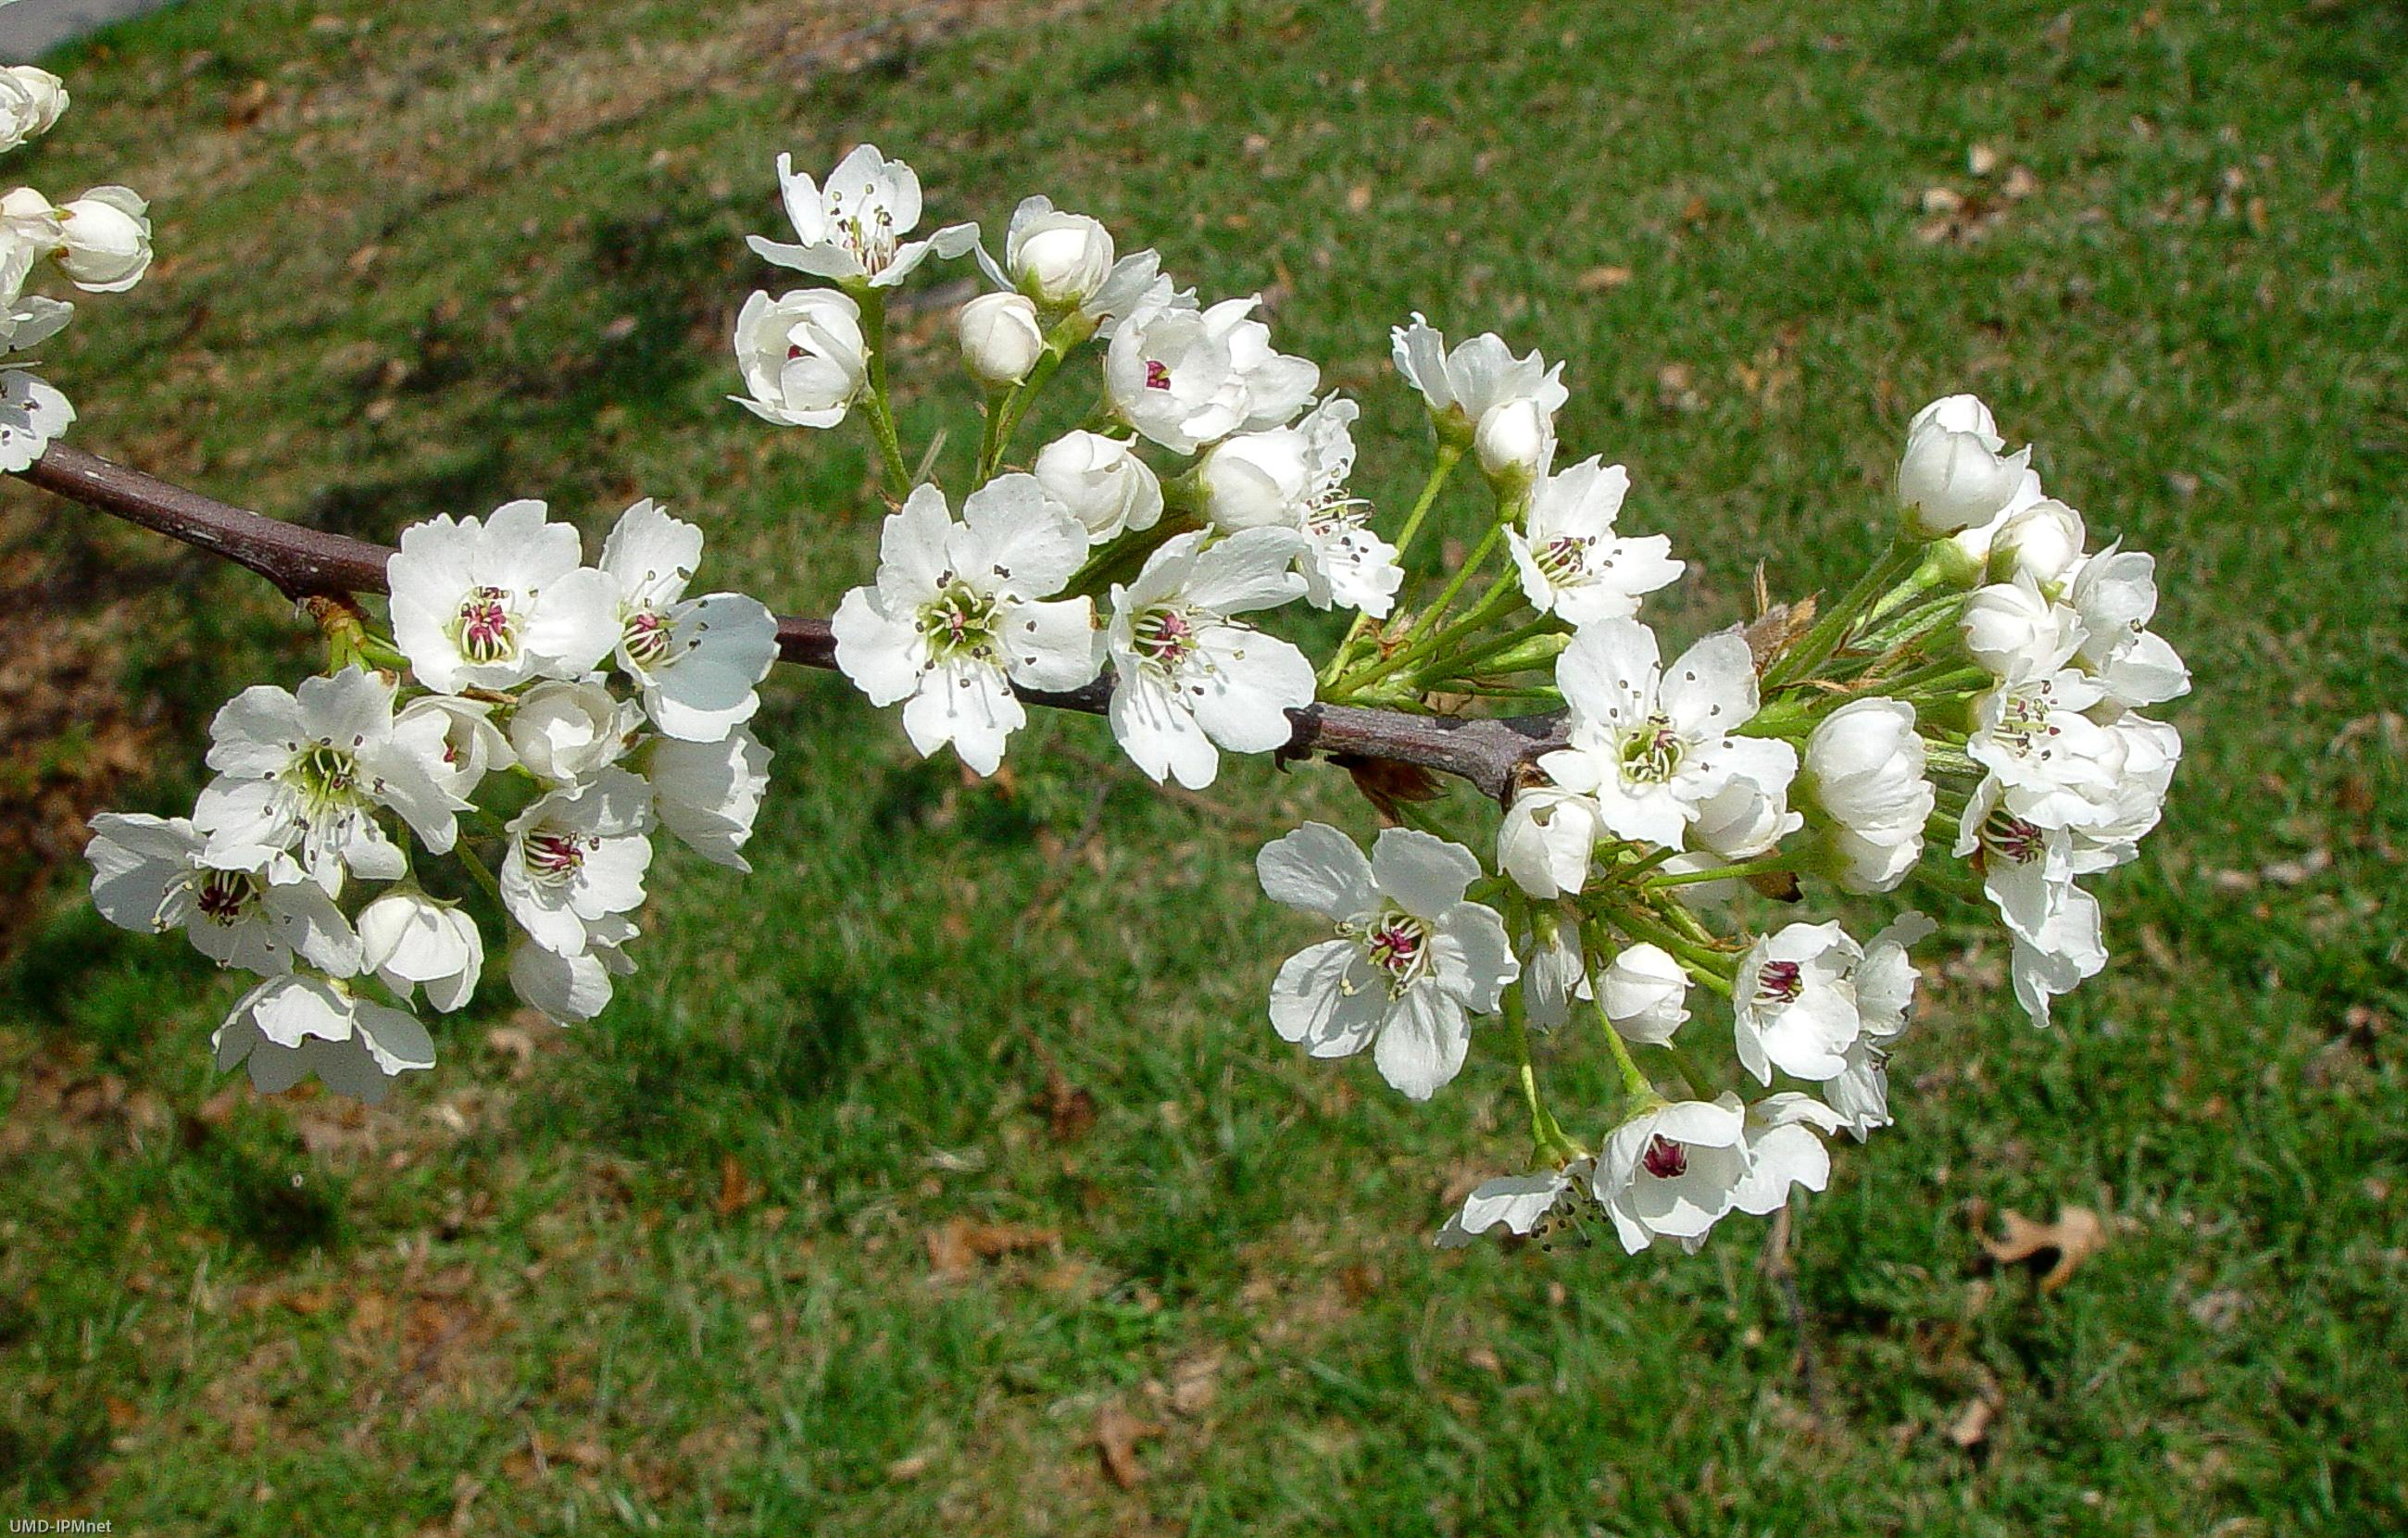 Callery pear tree in bloom